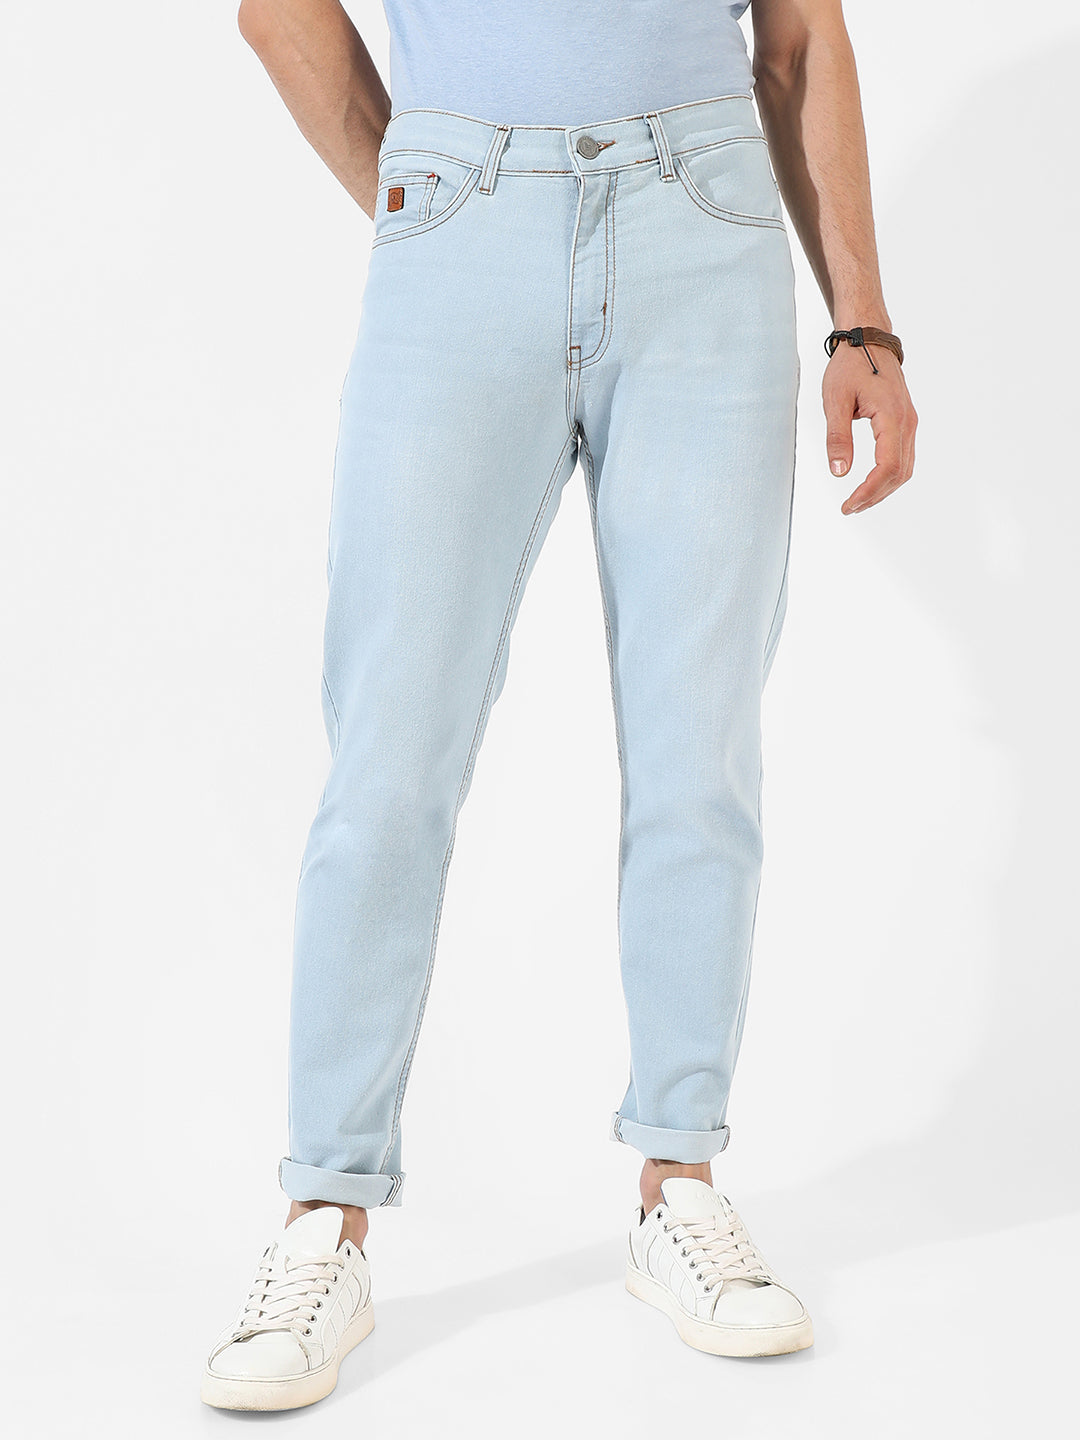 Light-Washed Denim Jeans